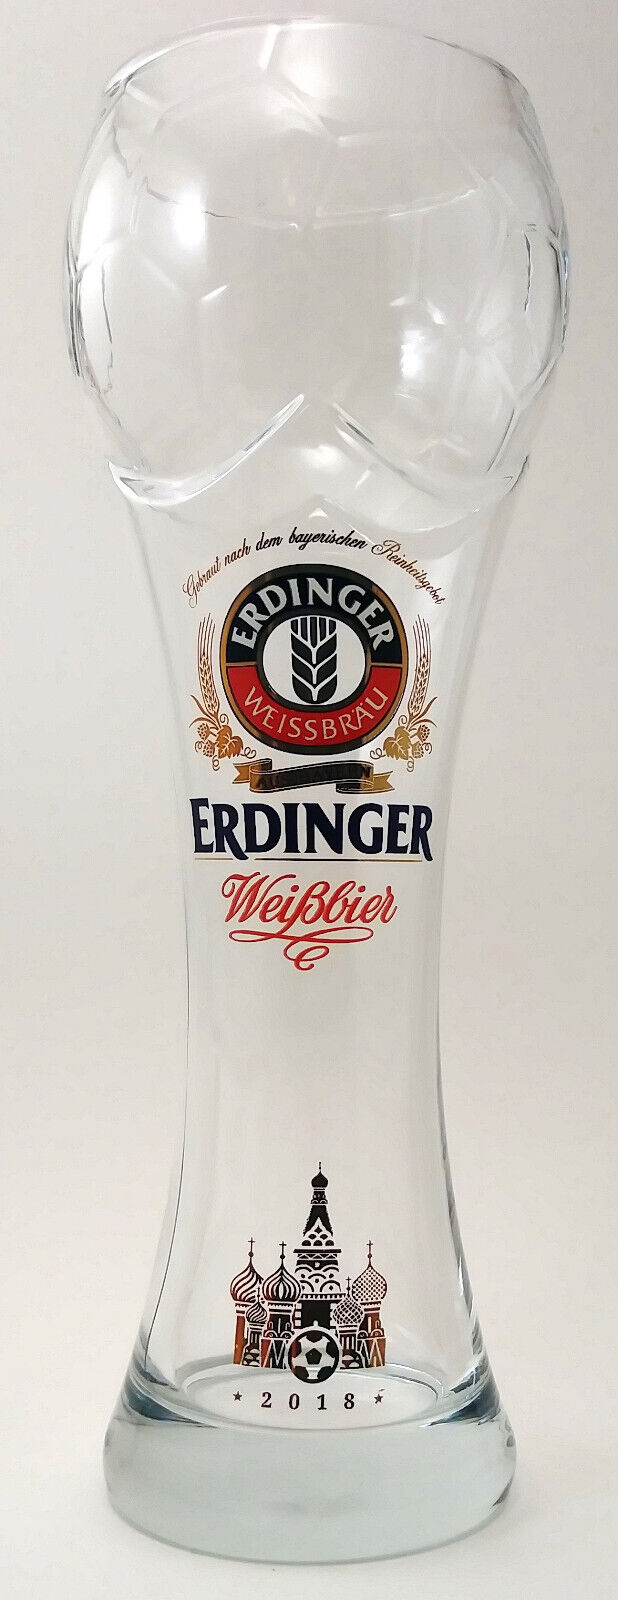 Erdinger Weissbier Weissbrau Weizen Beer Glass 2018 World Cup Russia Sohm .5L